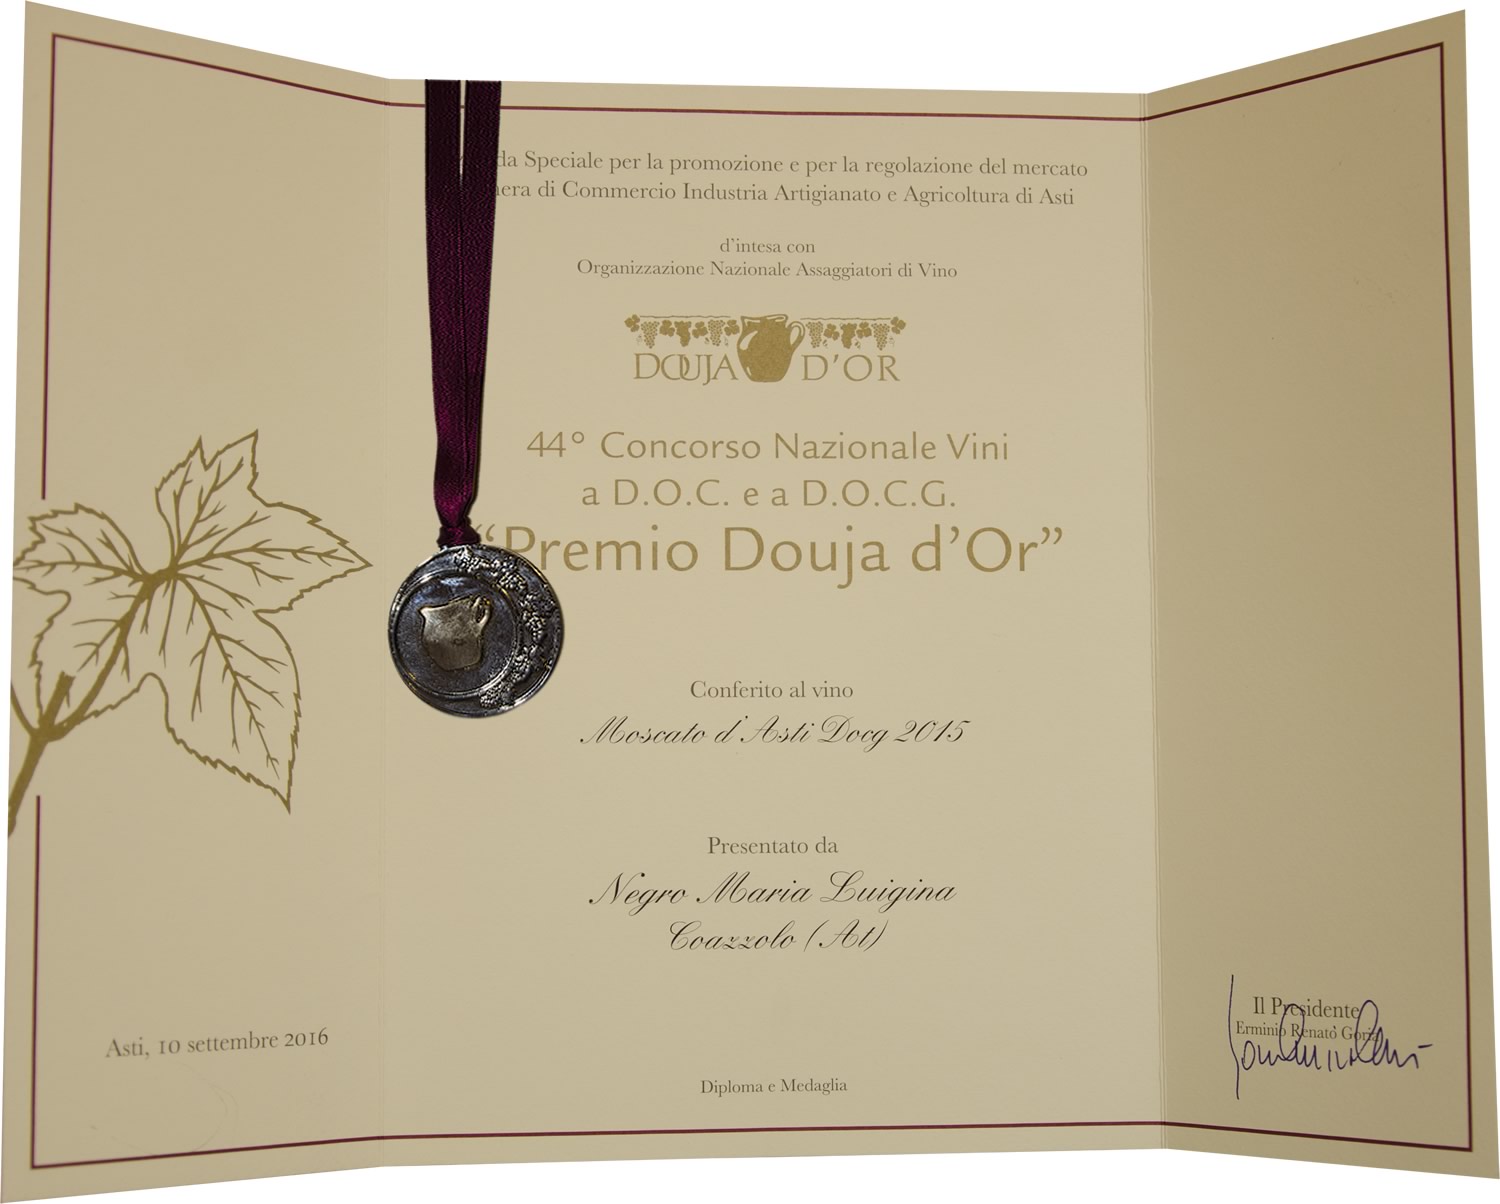 "Premio Douja d'Or" 2016 - Moscato d'Asti D.O.C.G. 2015.